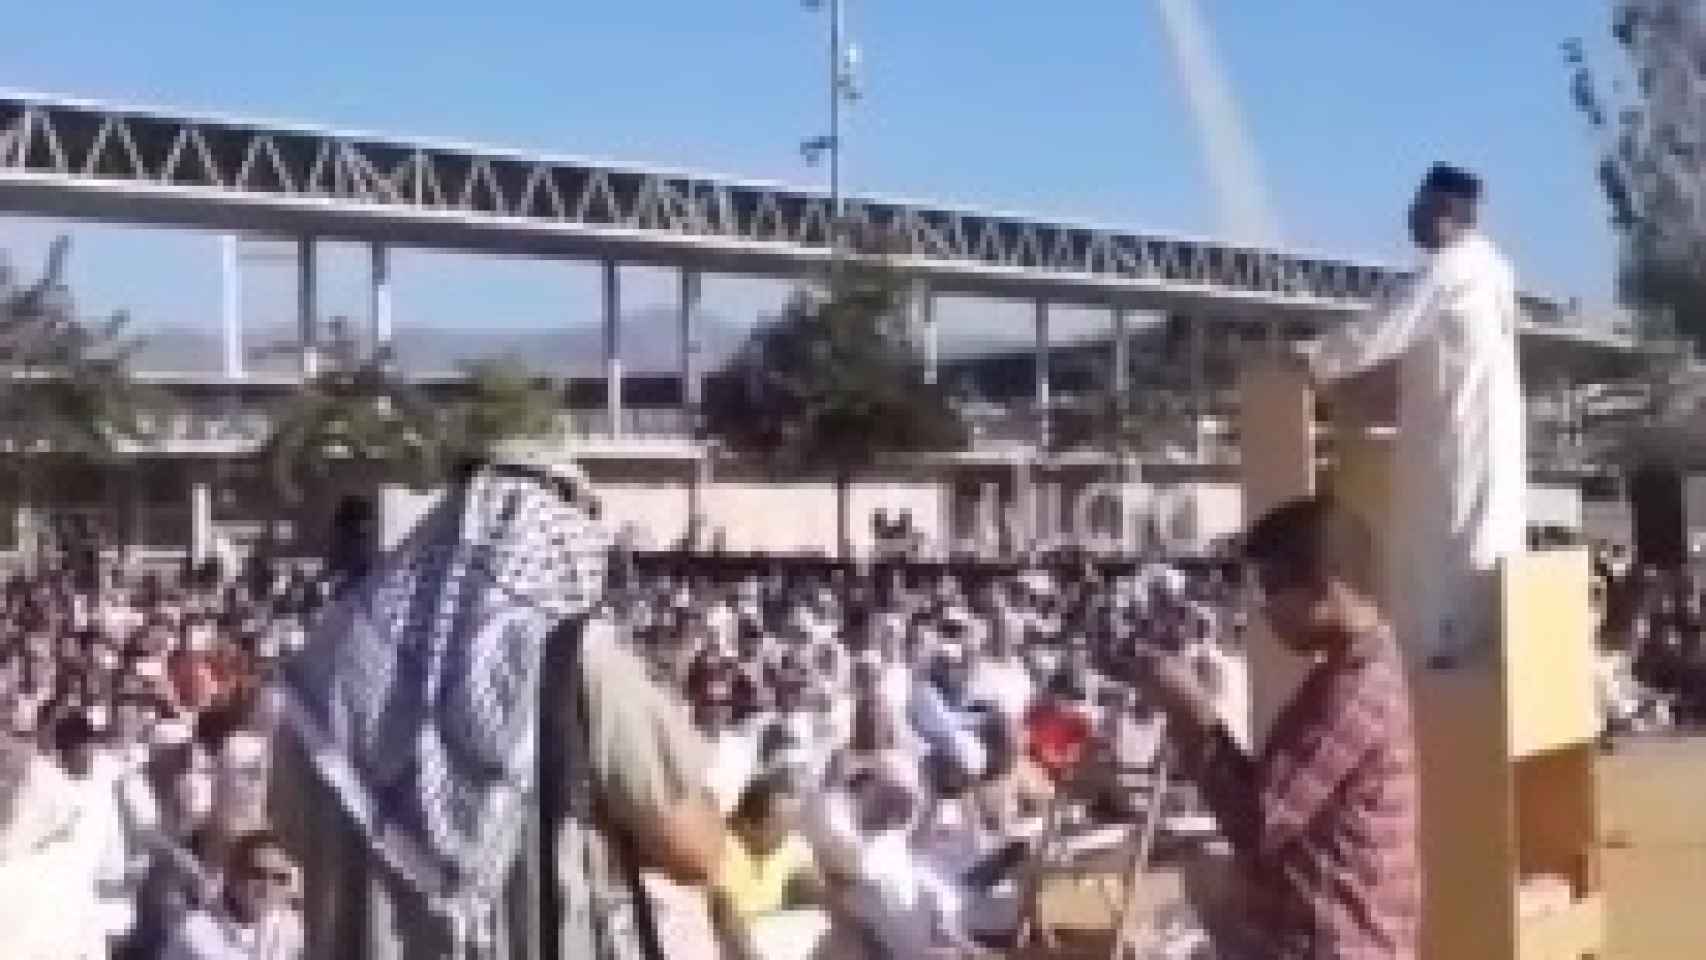 Captura del discurso del imán en el aparcamiento del Estadio de los Juegos Mediterráneos.